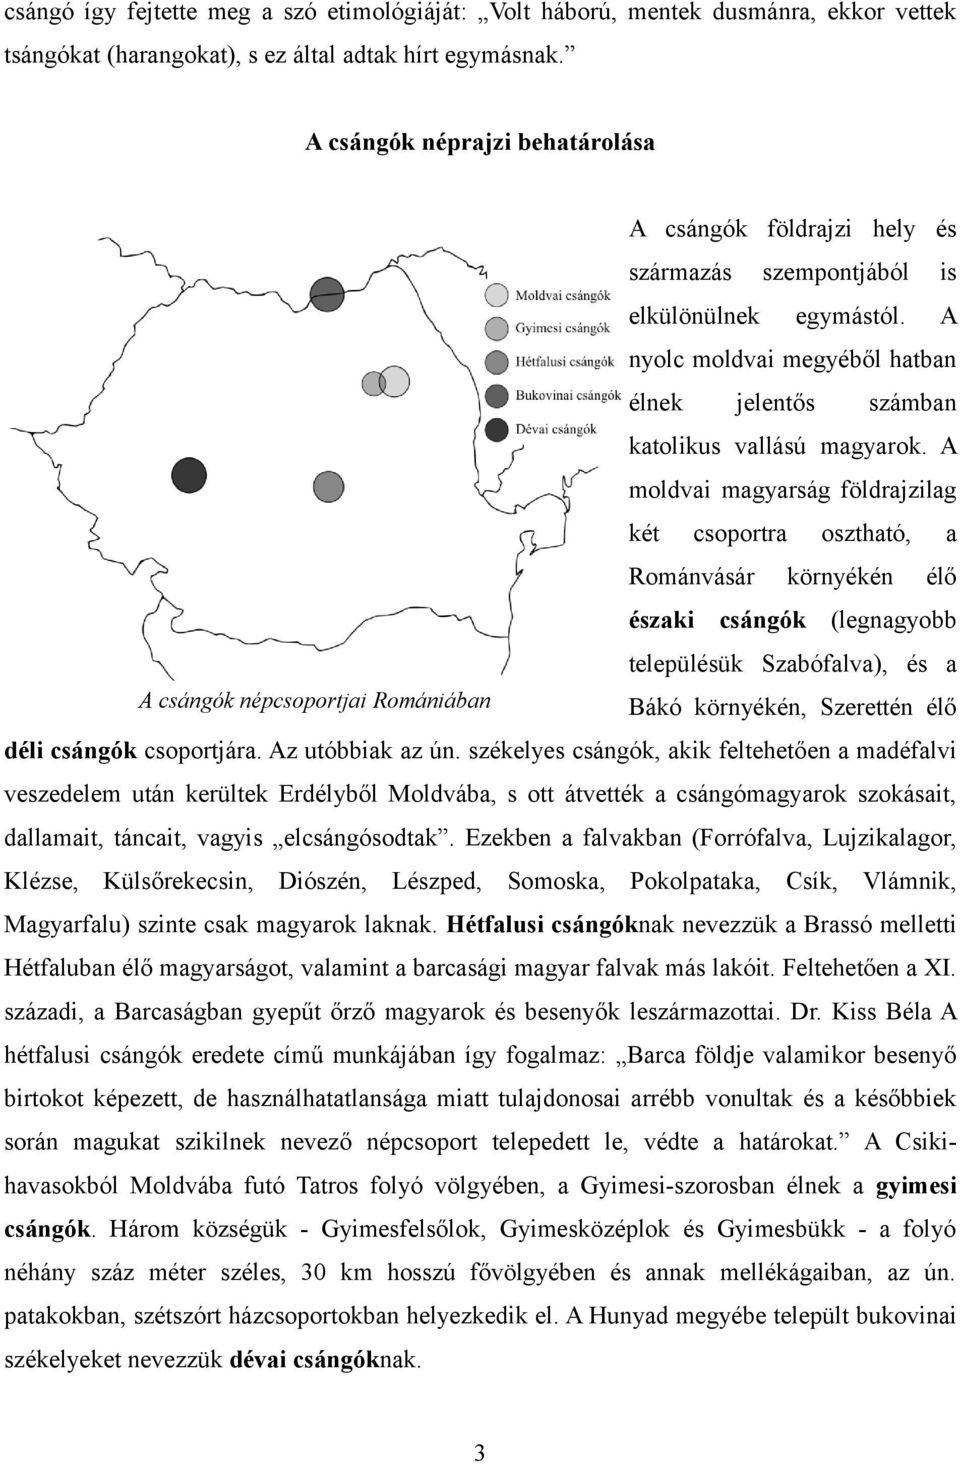 A moldvai magyarság földrajzilag két csoportra osztható, a Románvásár környékén élő északi csángók (legnagyobb településük Szabófalva), és a A csángók népcsoportjai Romániában Bákó környékén,